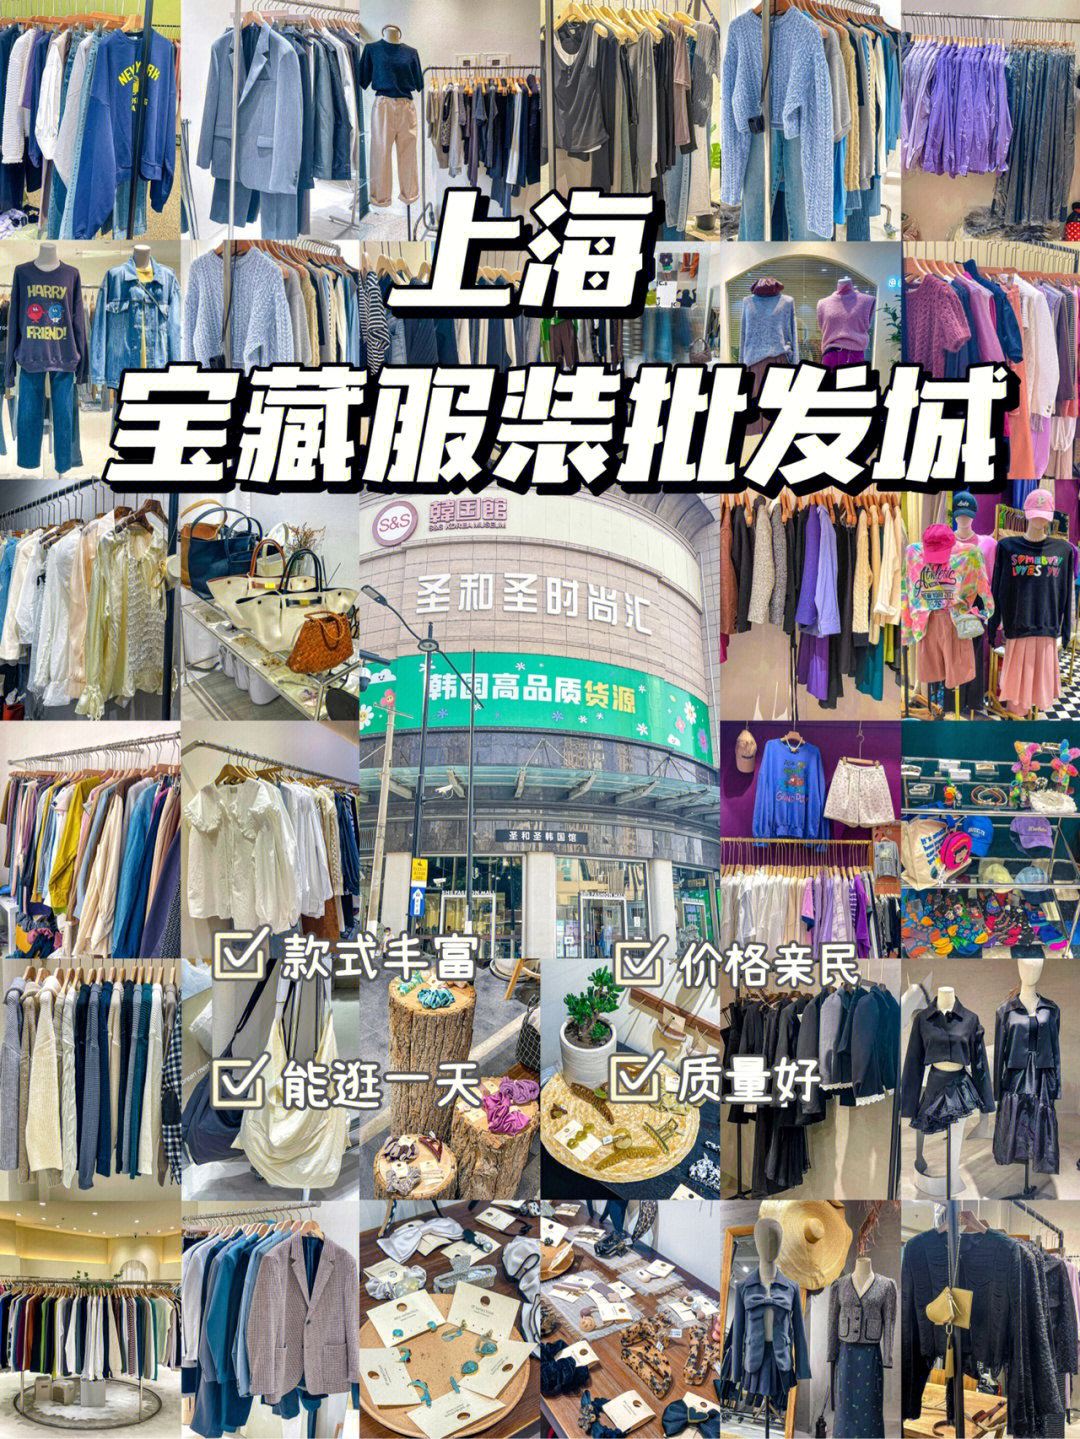 馆所属上海七浦路批发市场,主打韩国东大门货源为主的综合性服装商场!